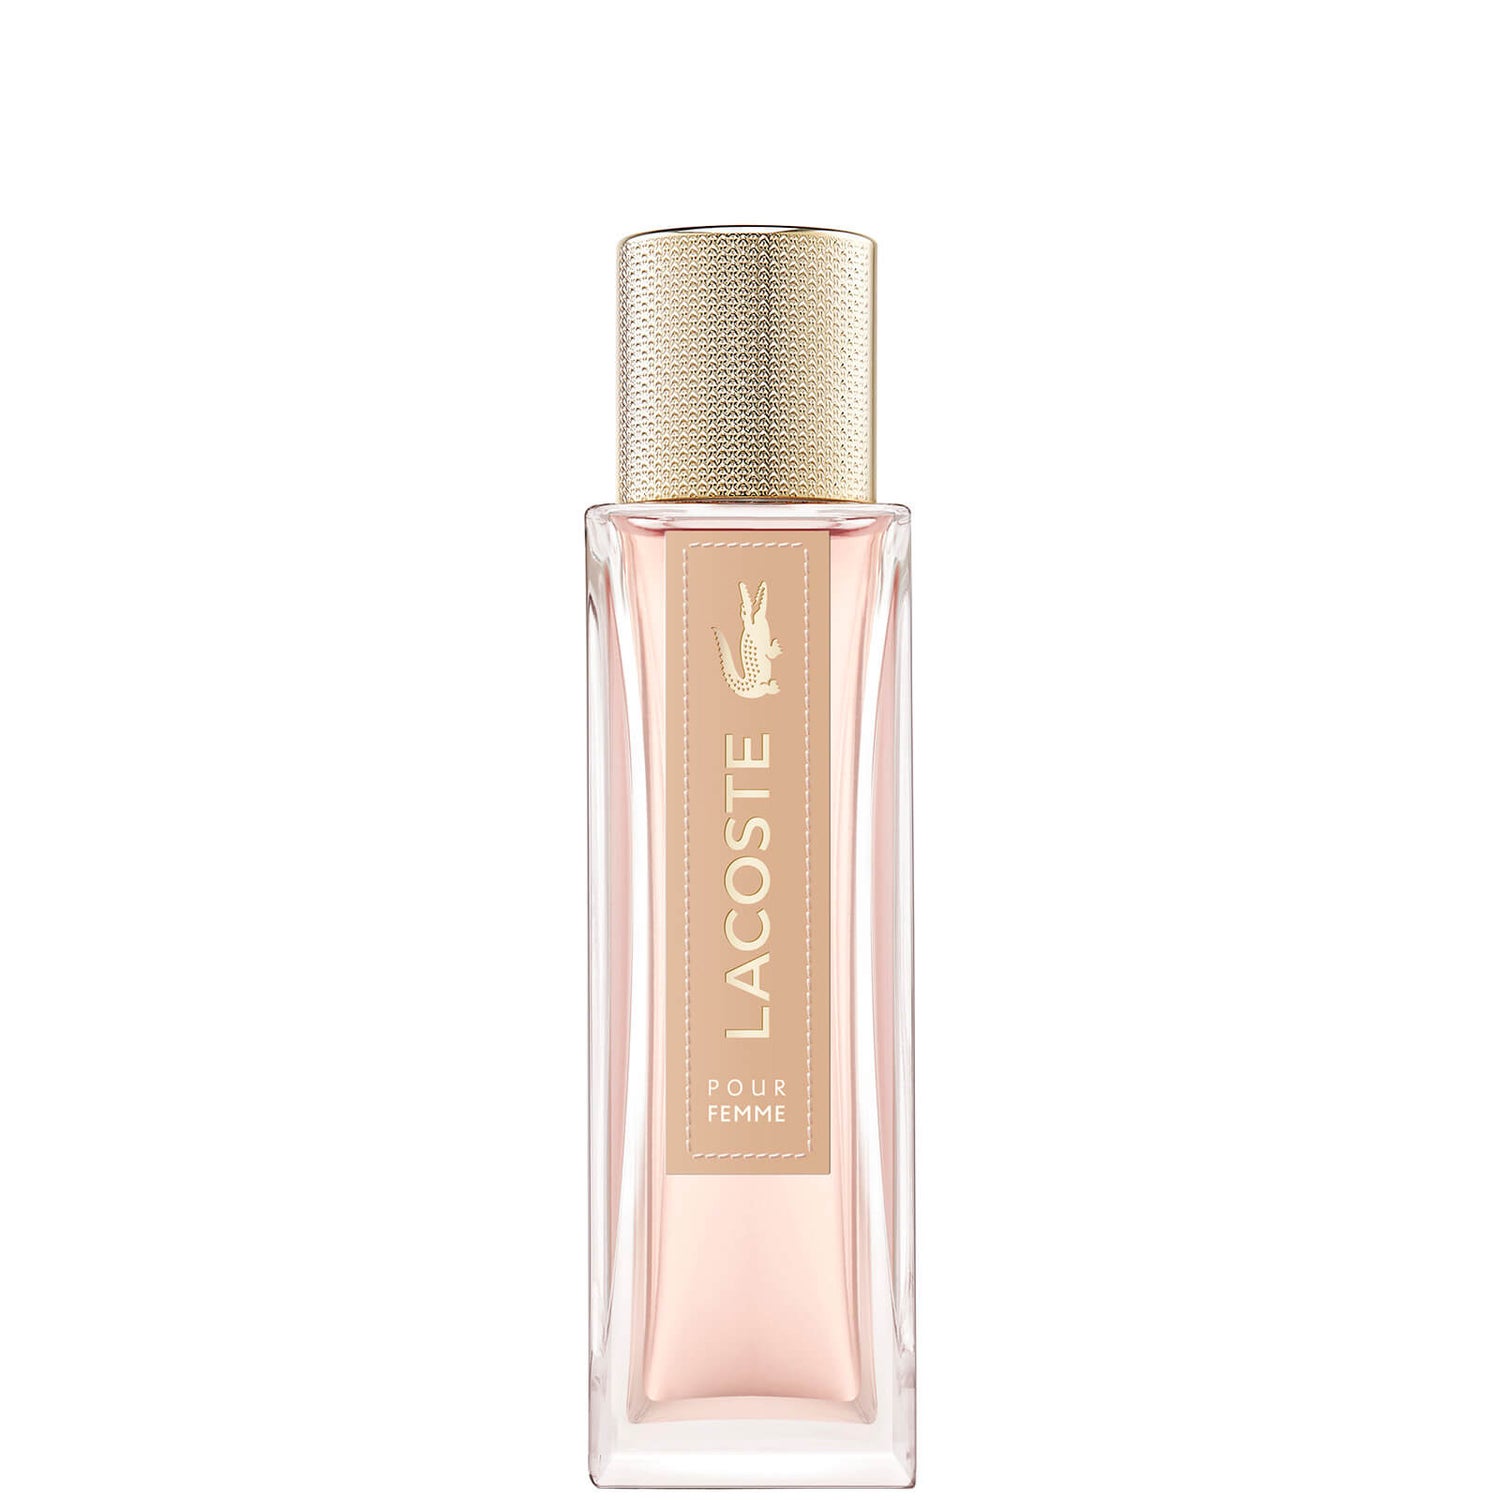 Lacoste Pour Femme Intense Eau de Parfum woda perfumowana 50 ml